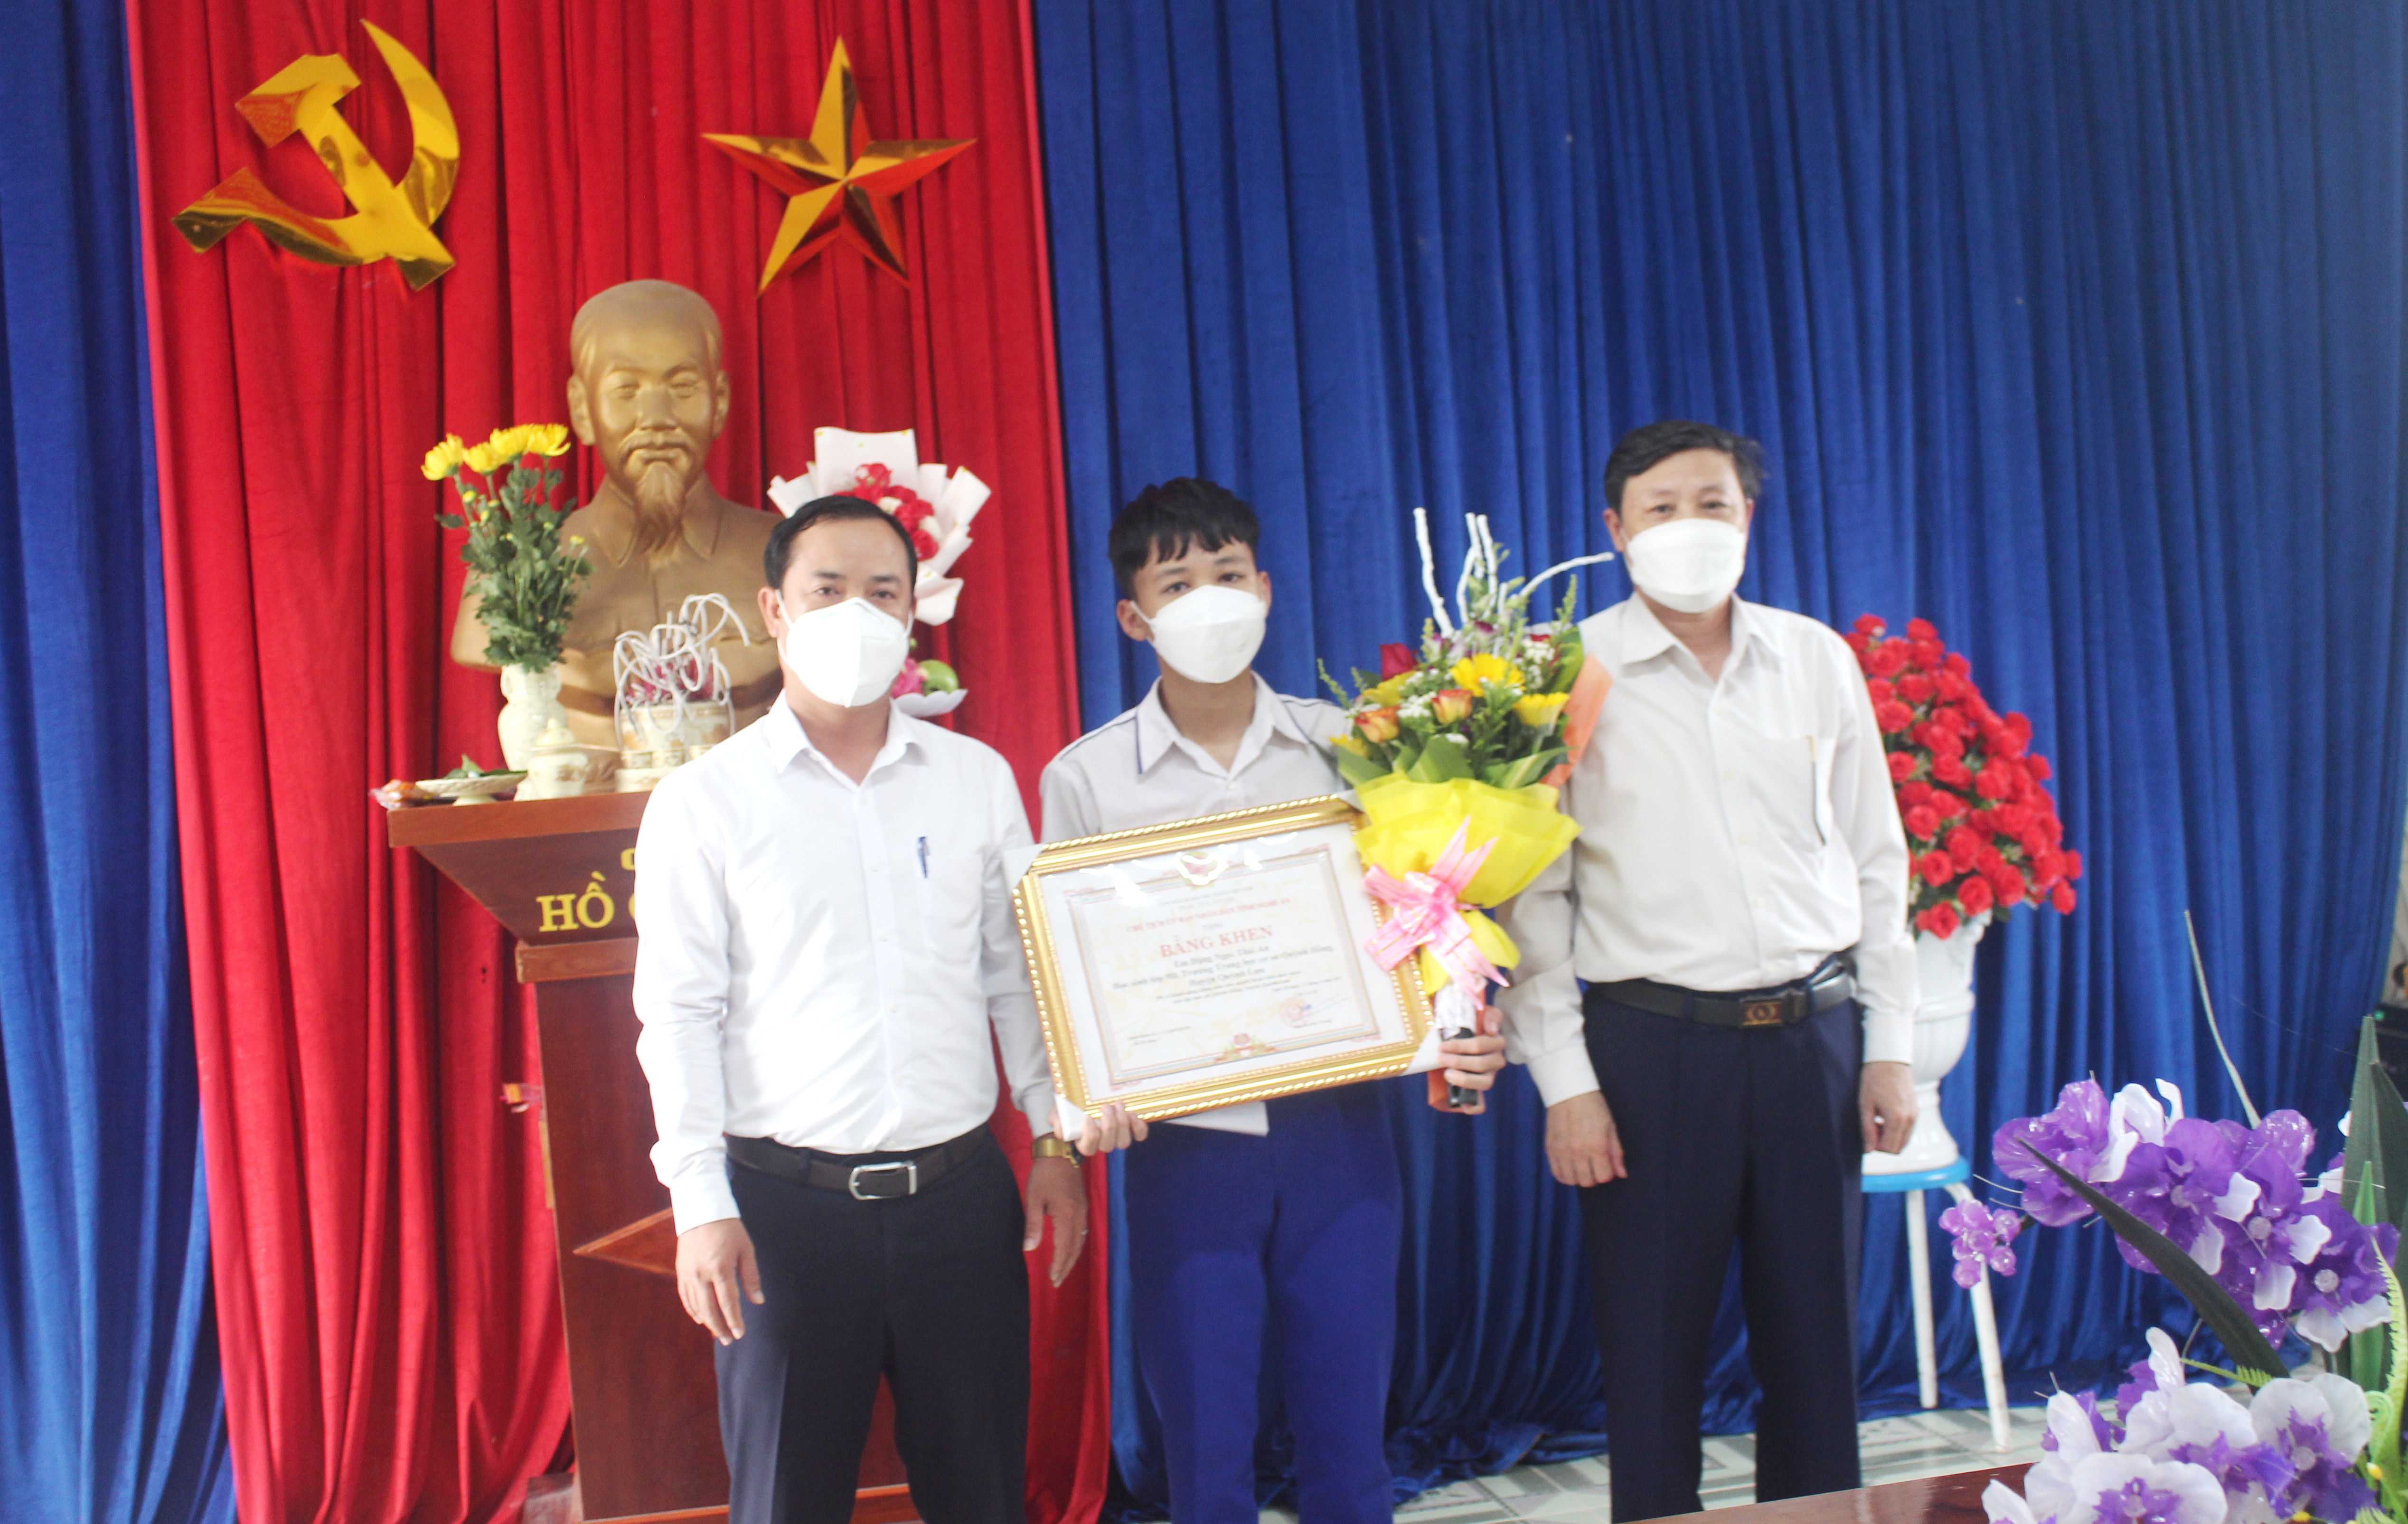  Tặng Bằng khen của Chủ tịch UBND tỉnh cho em Đặng Ngọc Thái An, học sinh lớp 9D, trường THCS Quỳnh Hồng (Quỳnh Lưu).